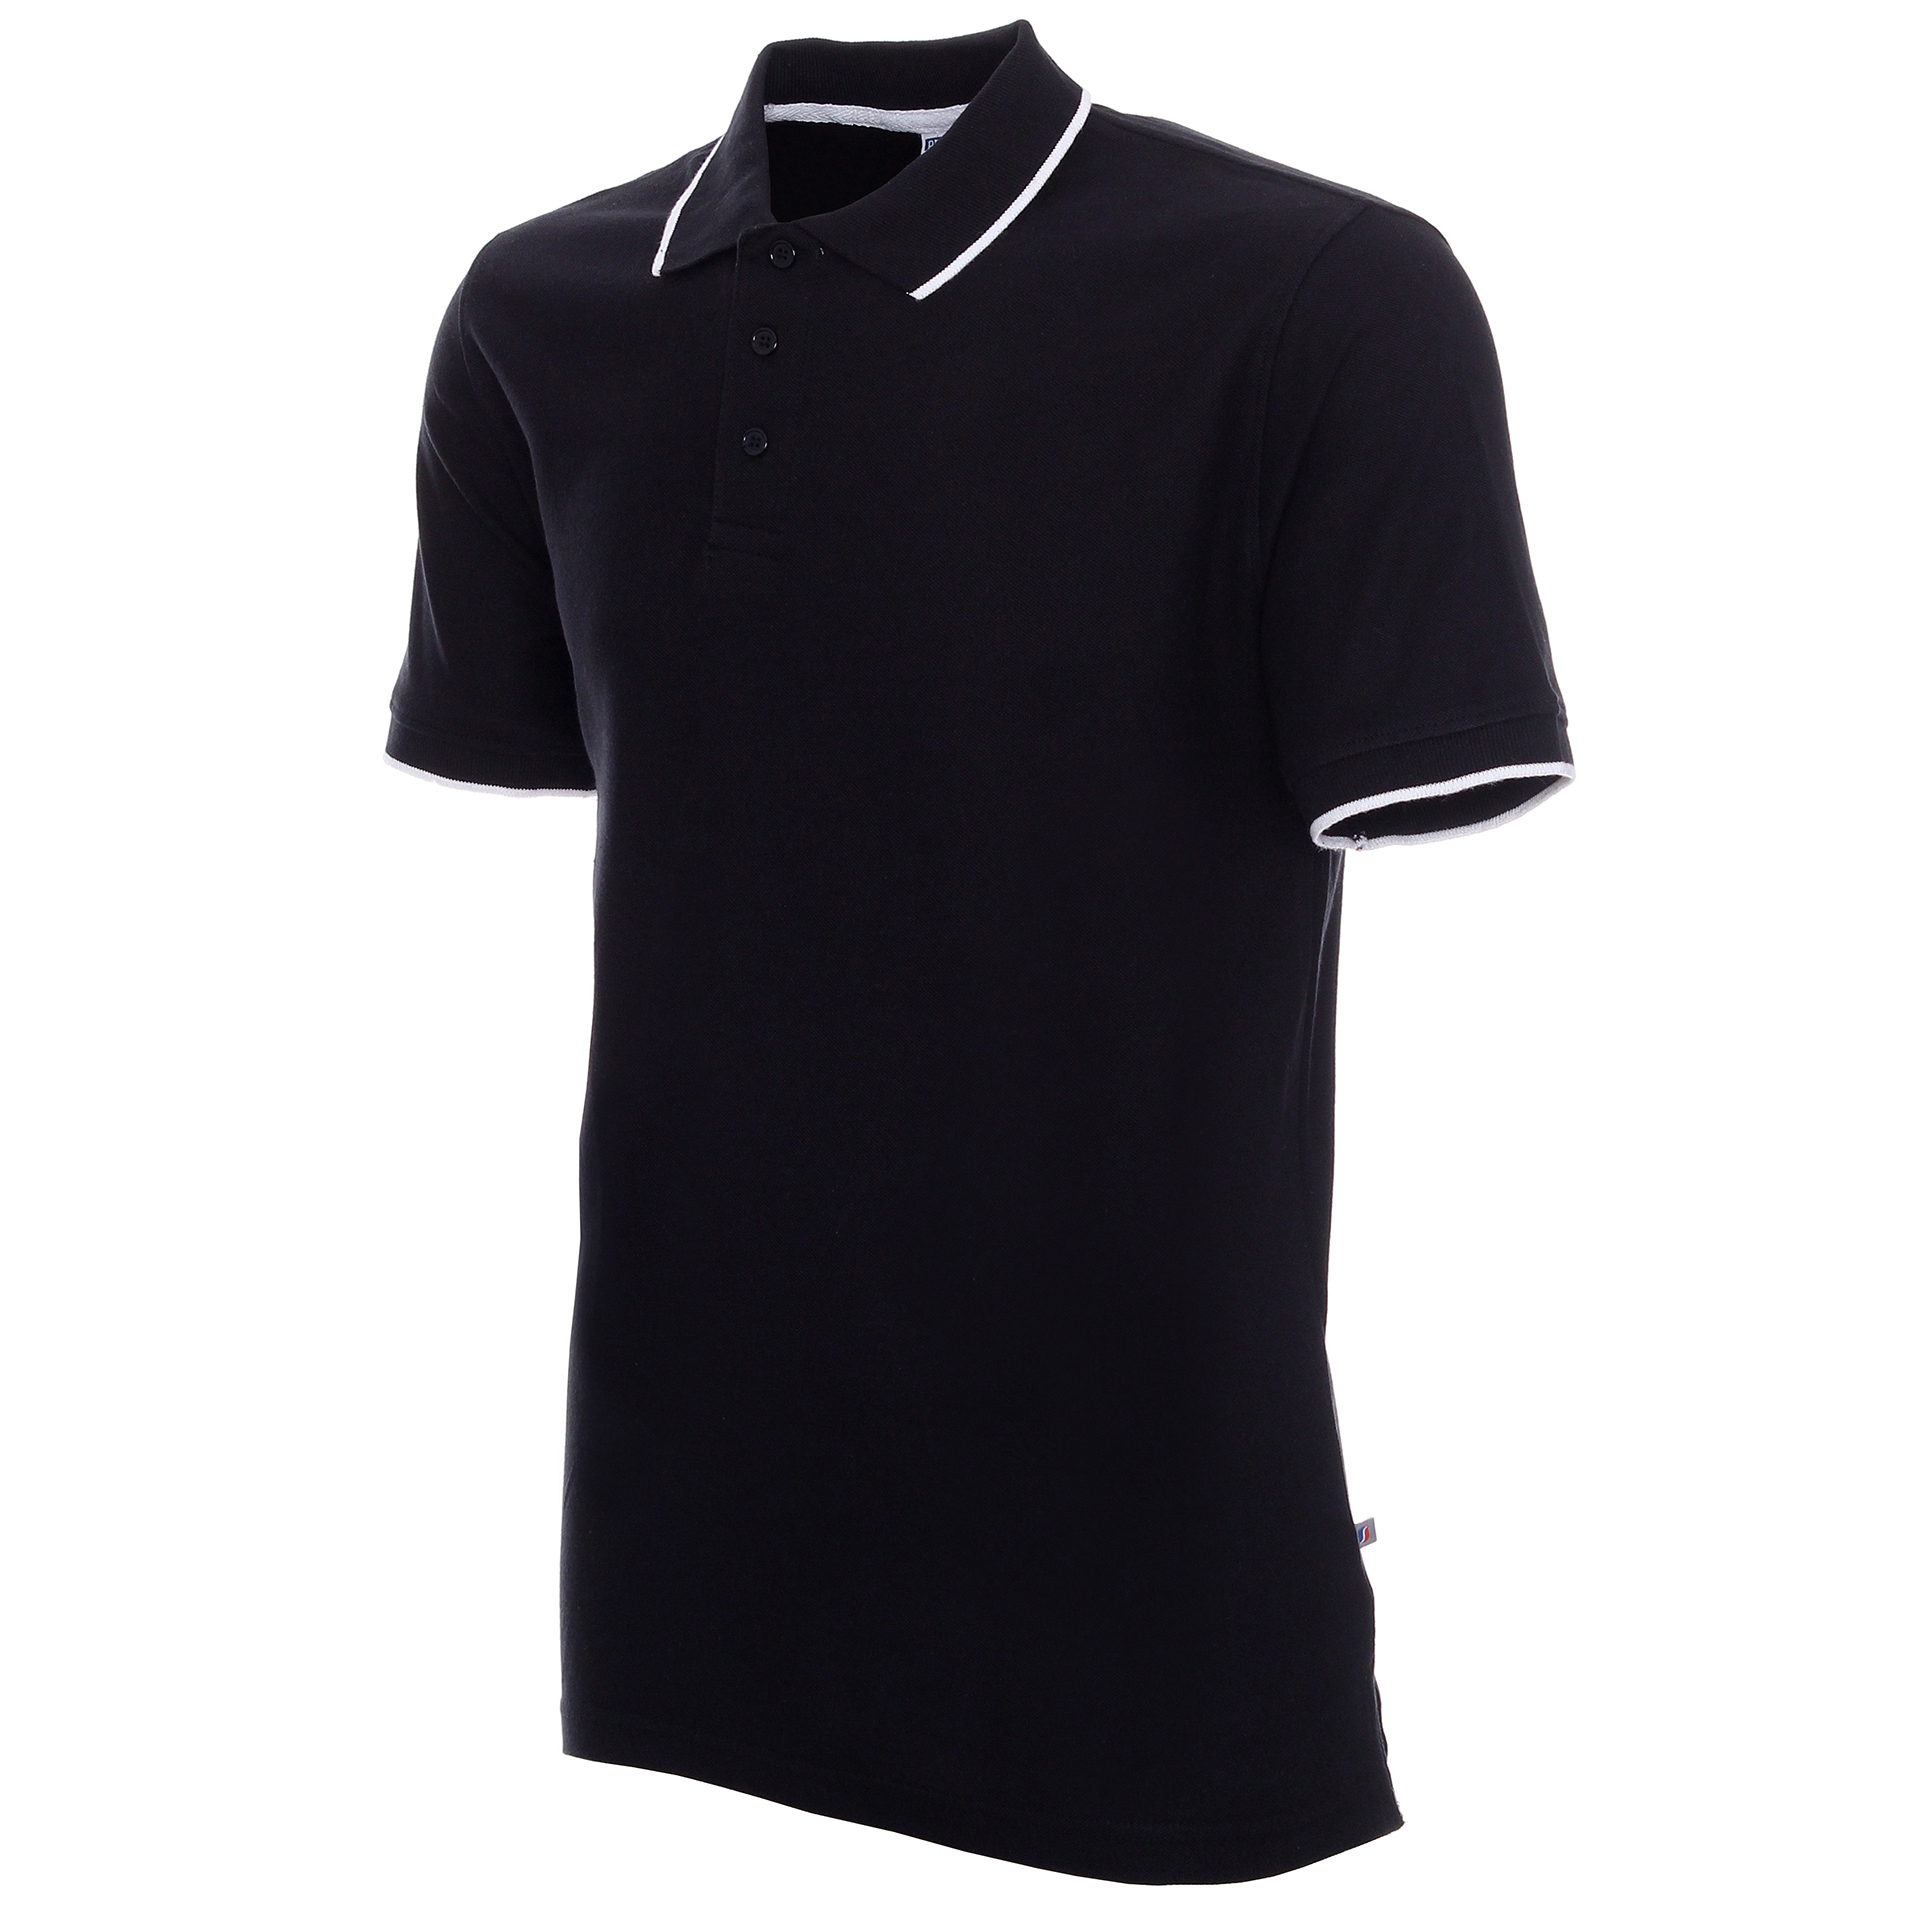 Koszulka Polo Promostars Line - czarna z białym wykończeniem